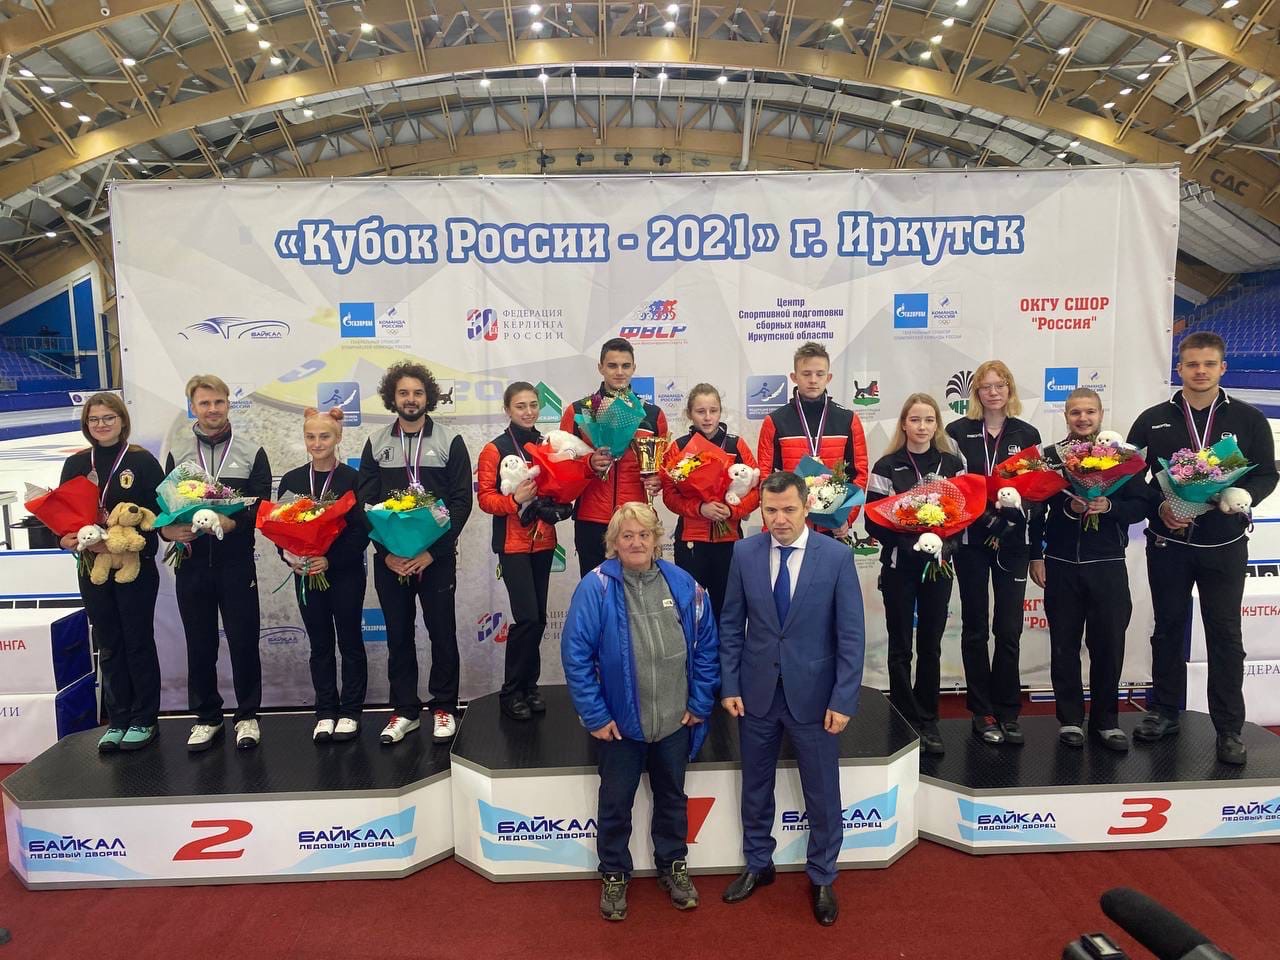 Ярославские керлингисты стали серебряными призерами Кубка России